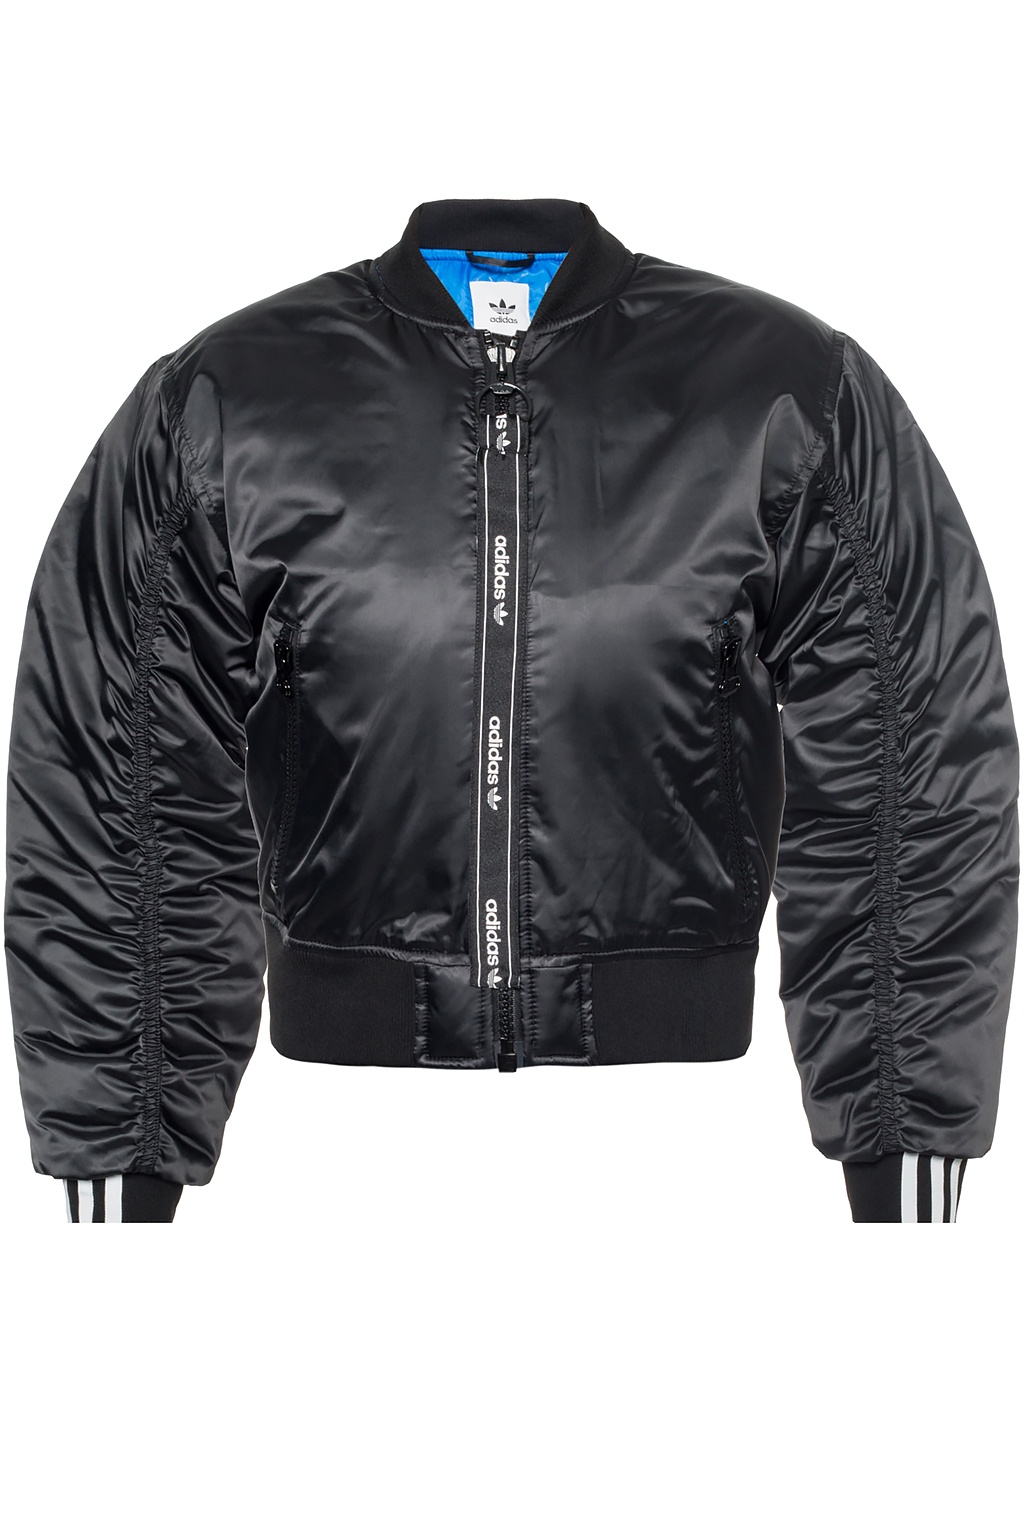 adidas originals leather bomber jacket